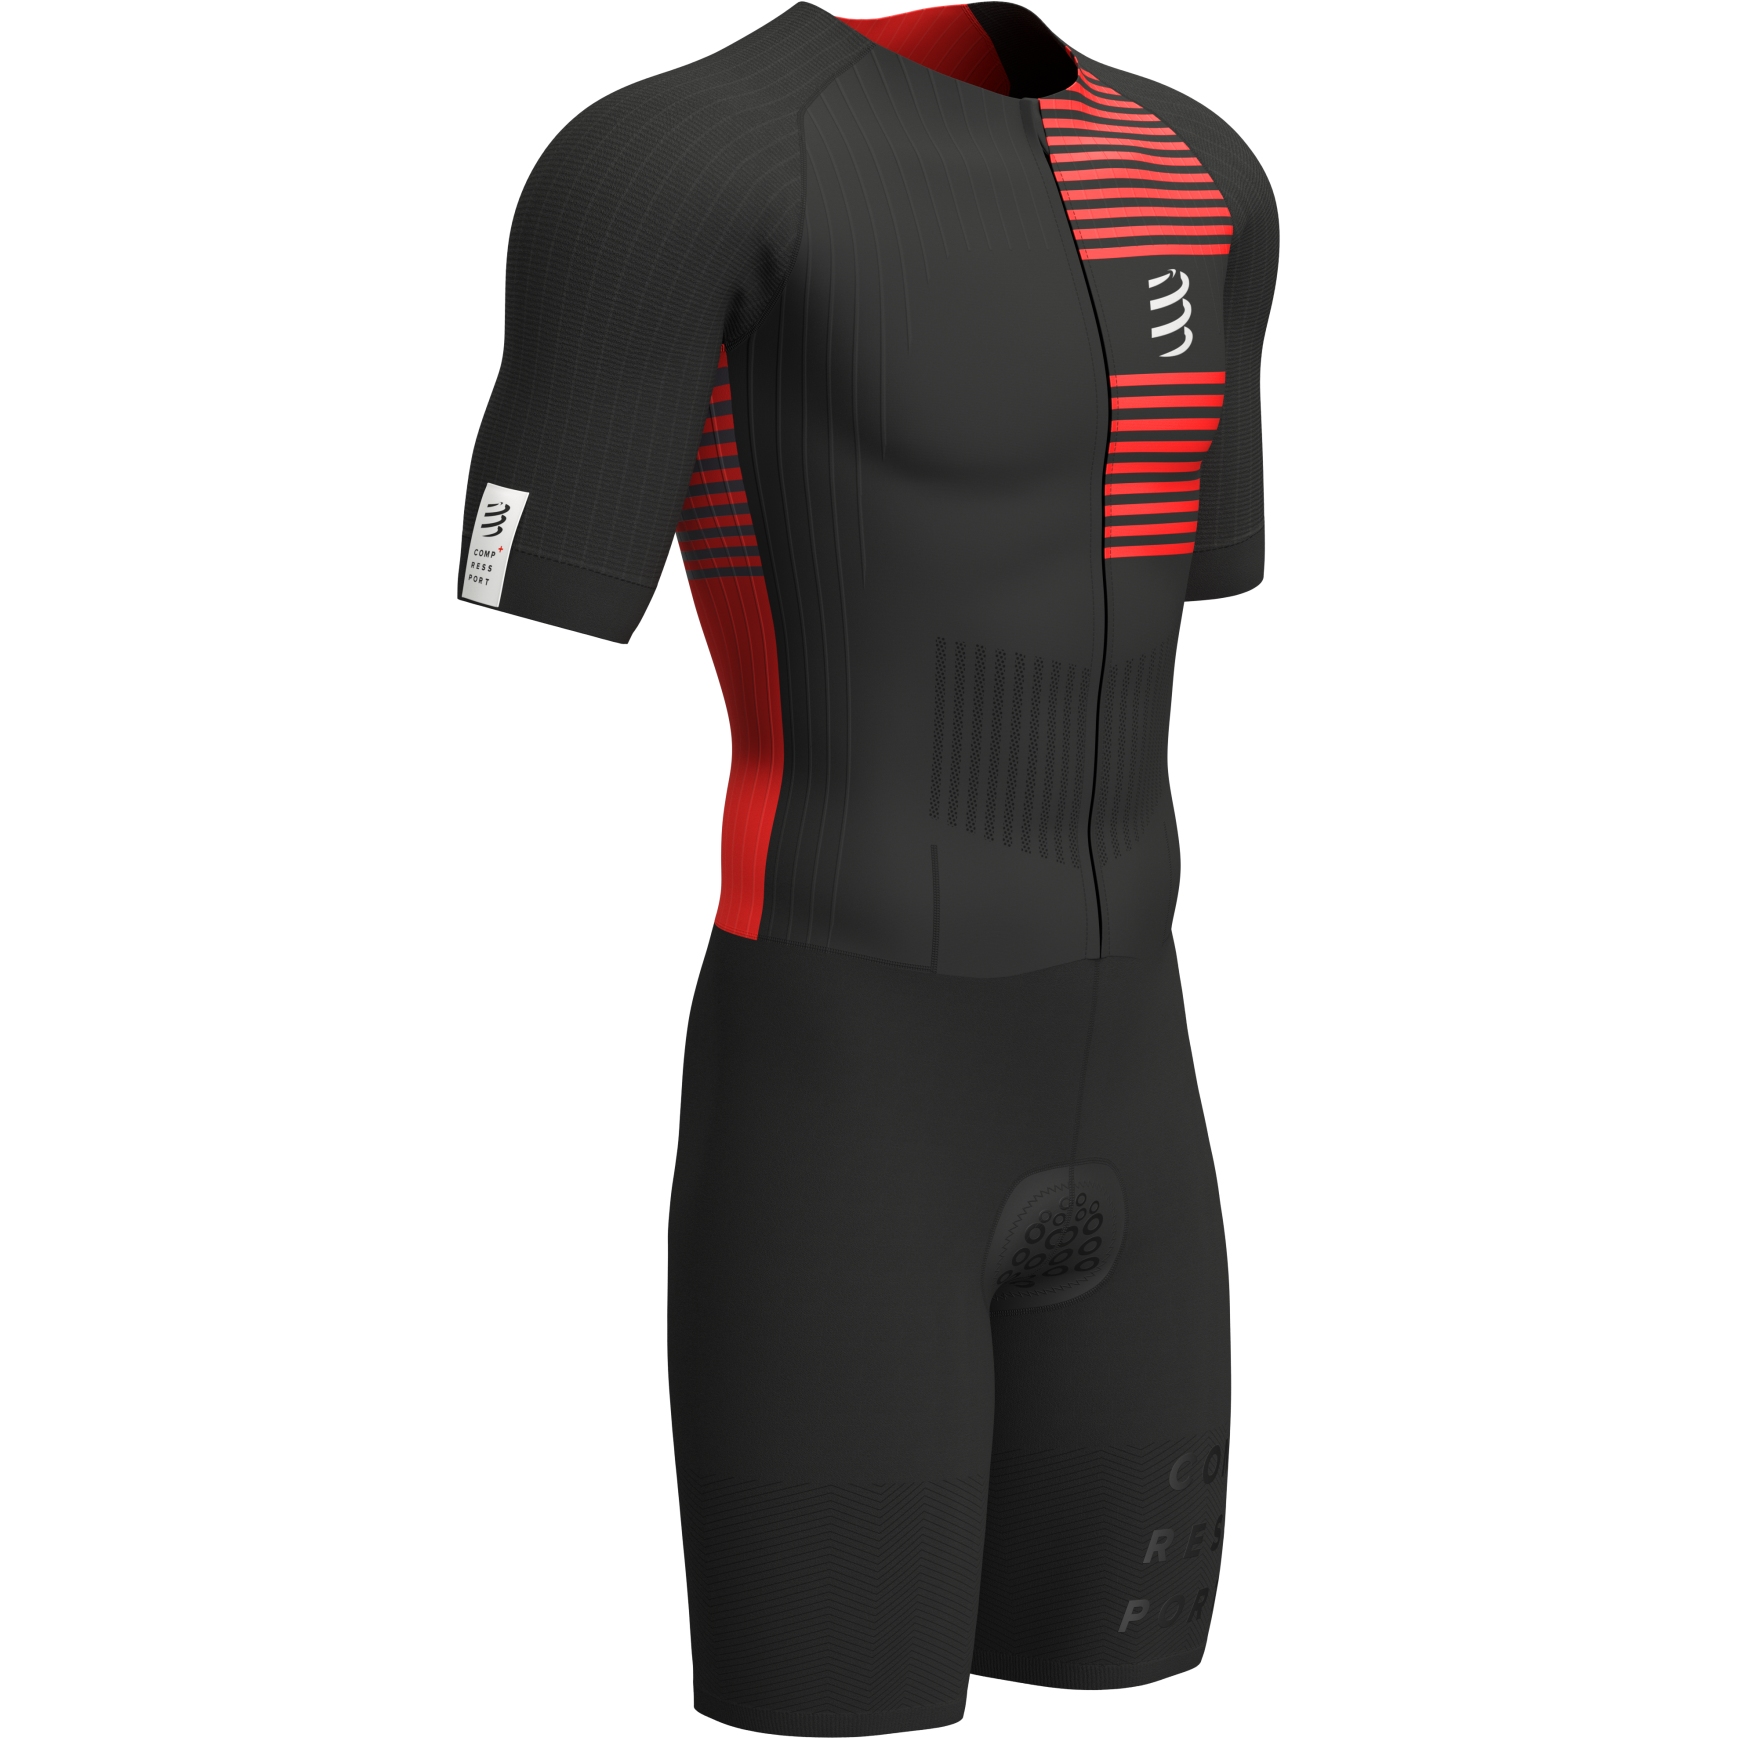 Produktbild von Compressport Aero Kurzarm-Triathlonanzug Herren - schwarz/rot